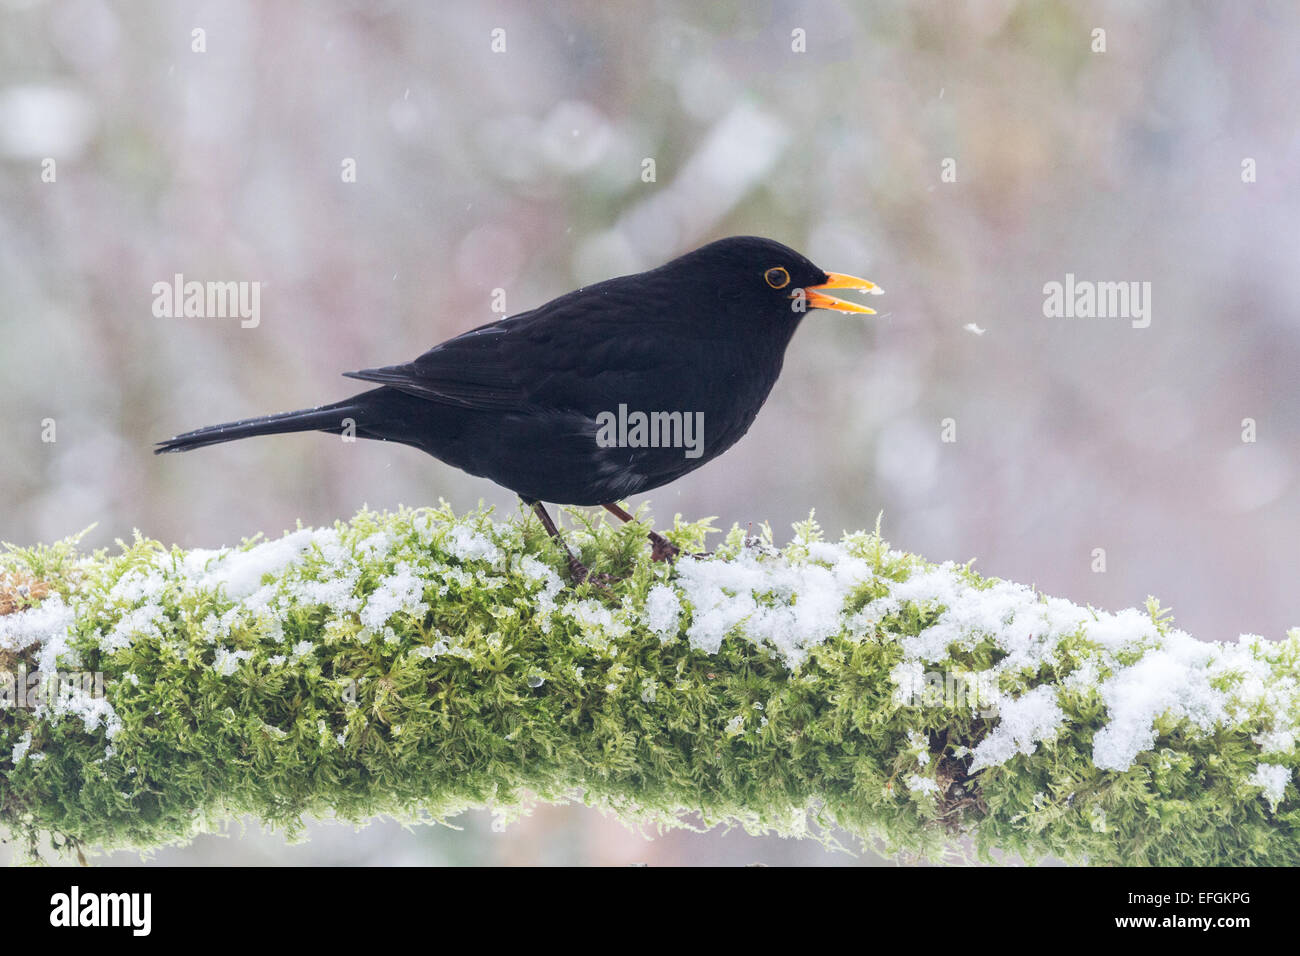 Männliche Amsel auf Schnee und Moos bedeckt Zweig.  An einem Wintertag in Großbritannien genommen, hat er seinen Schnabel zu öffnen. Stockfoto